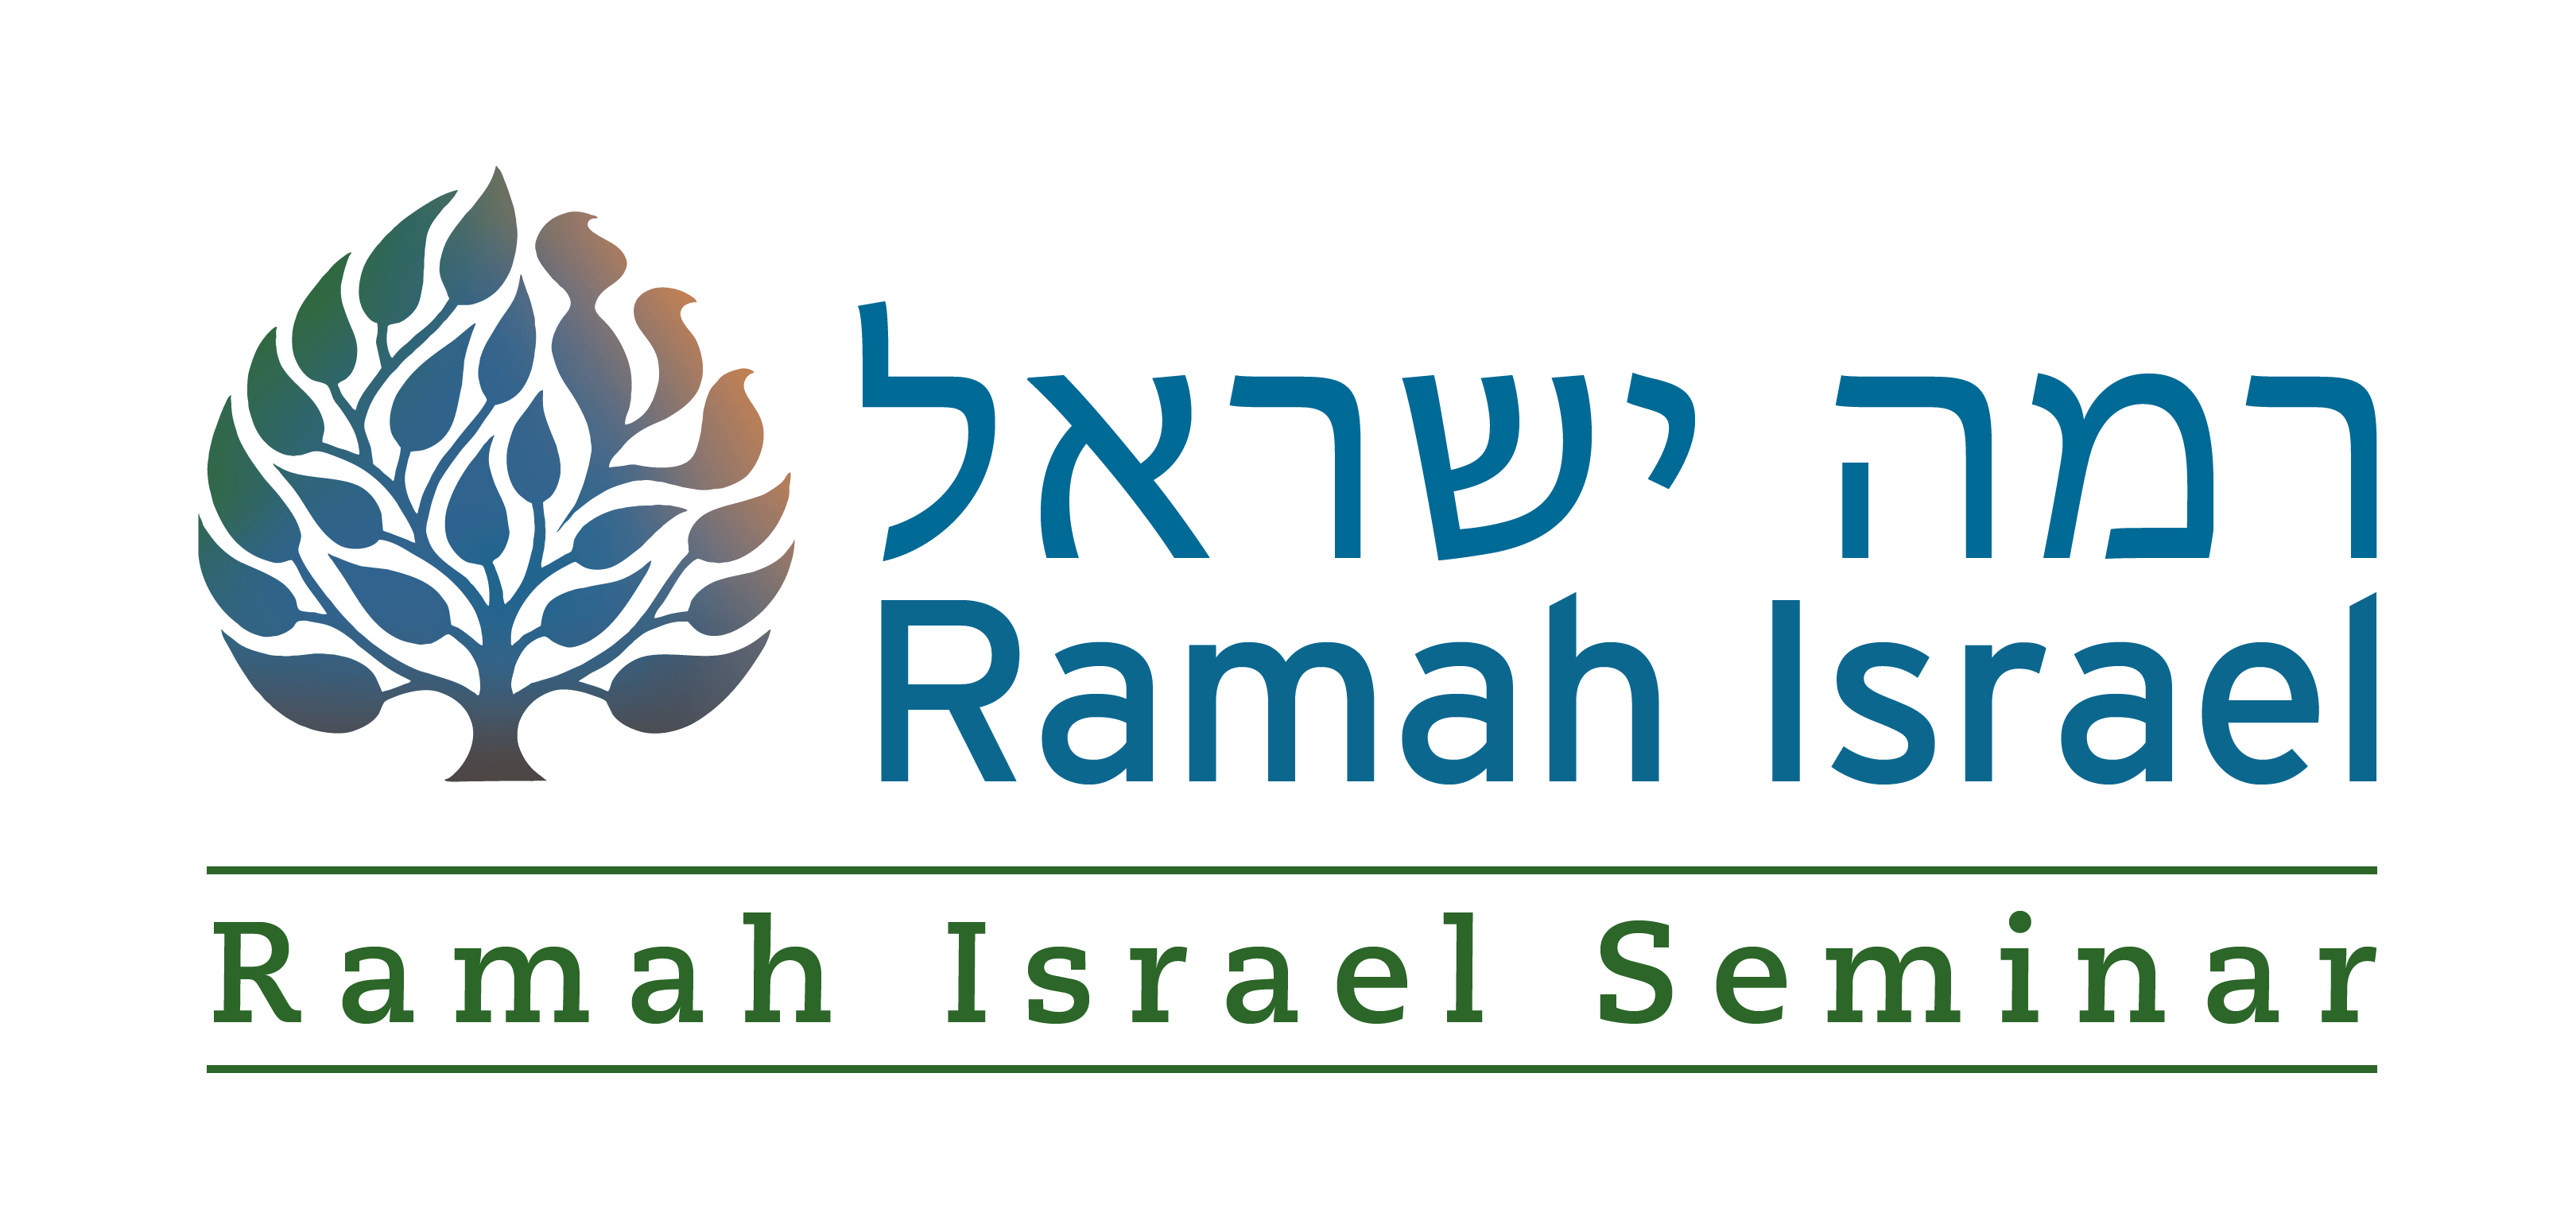 Ramah Logo - Seminar Programs in Israel. Ramah Israel Seminar